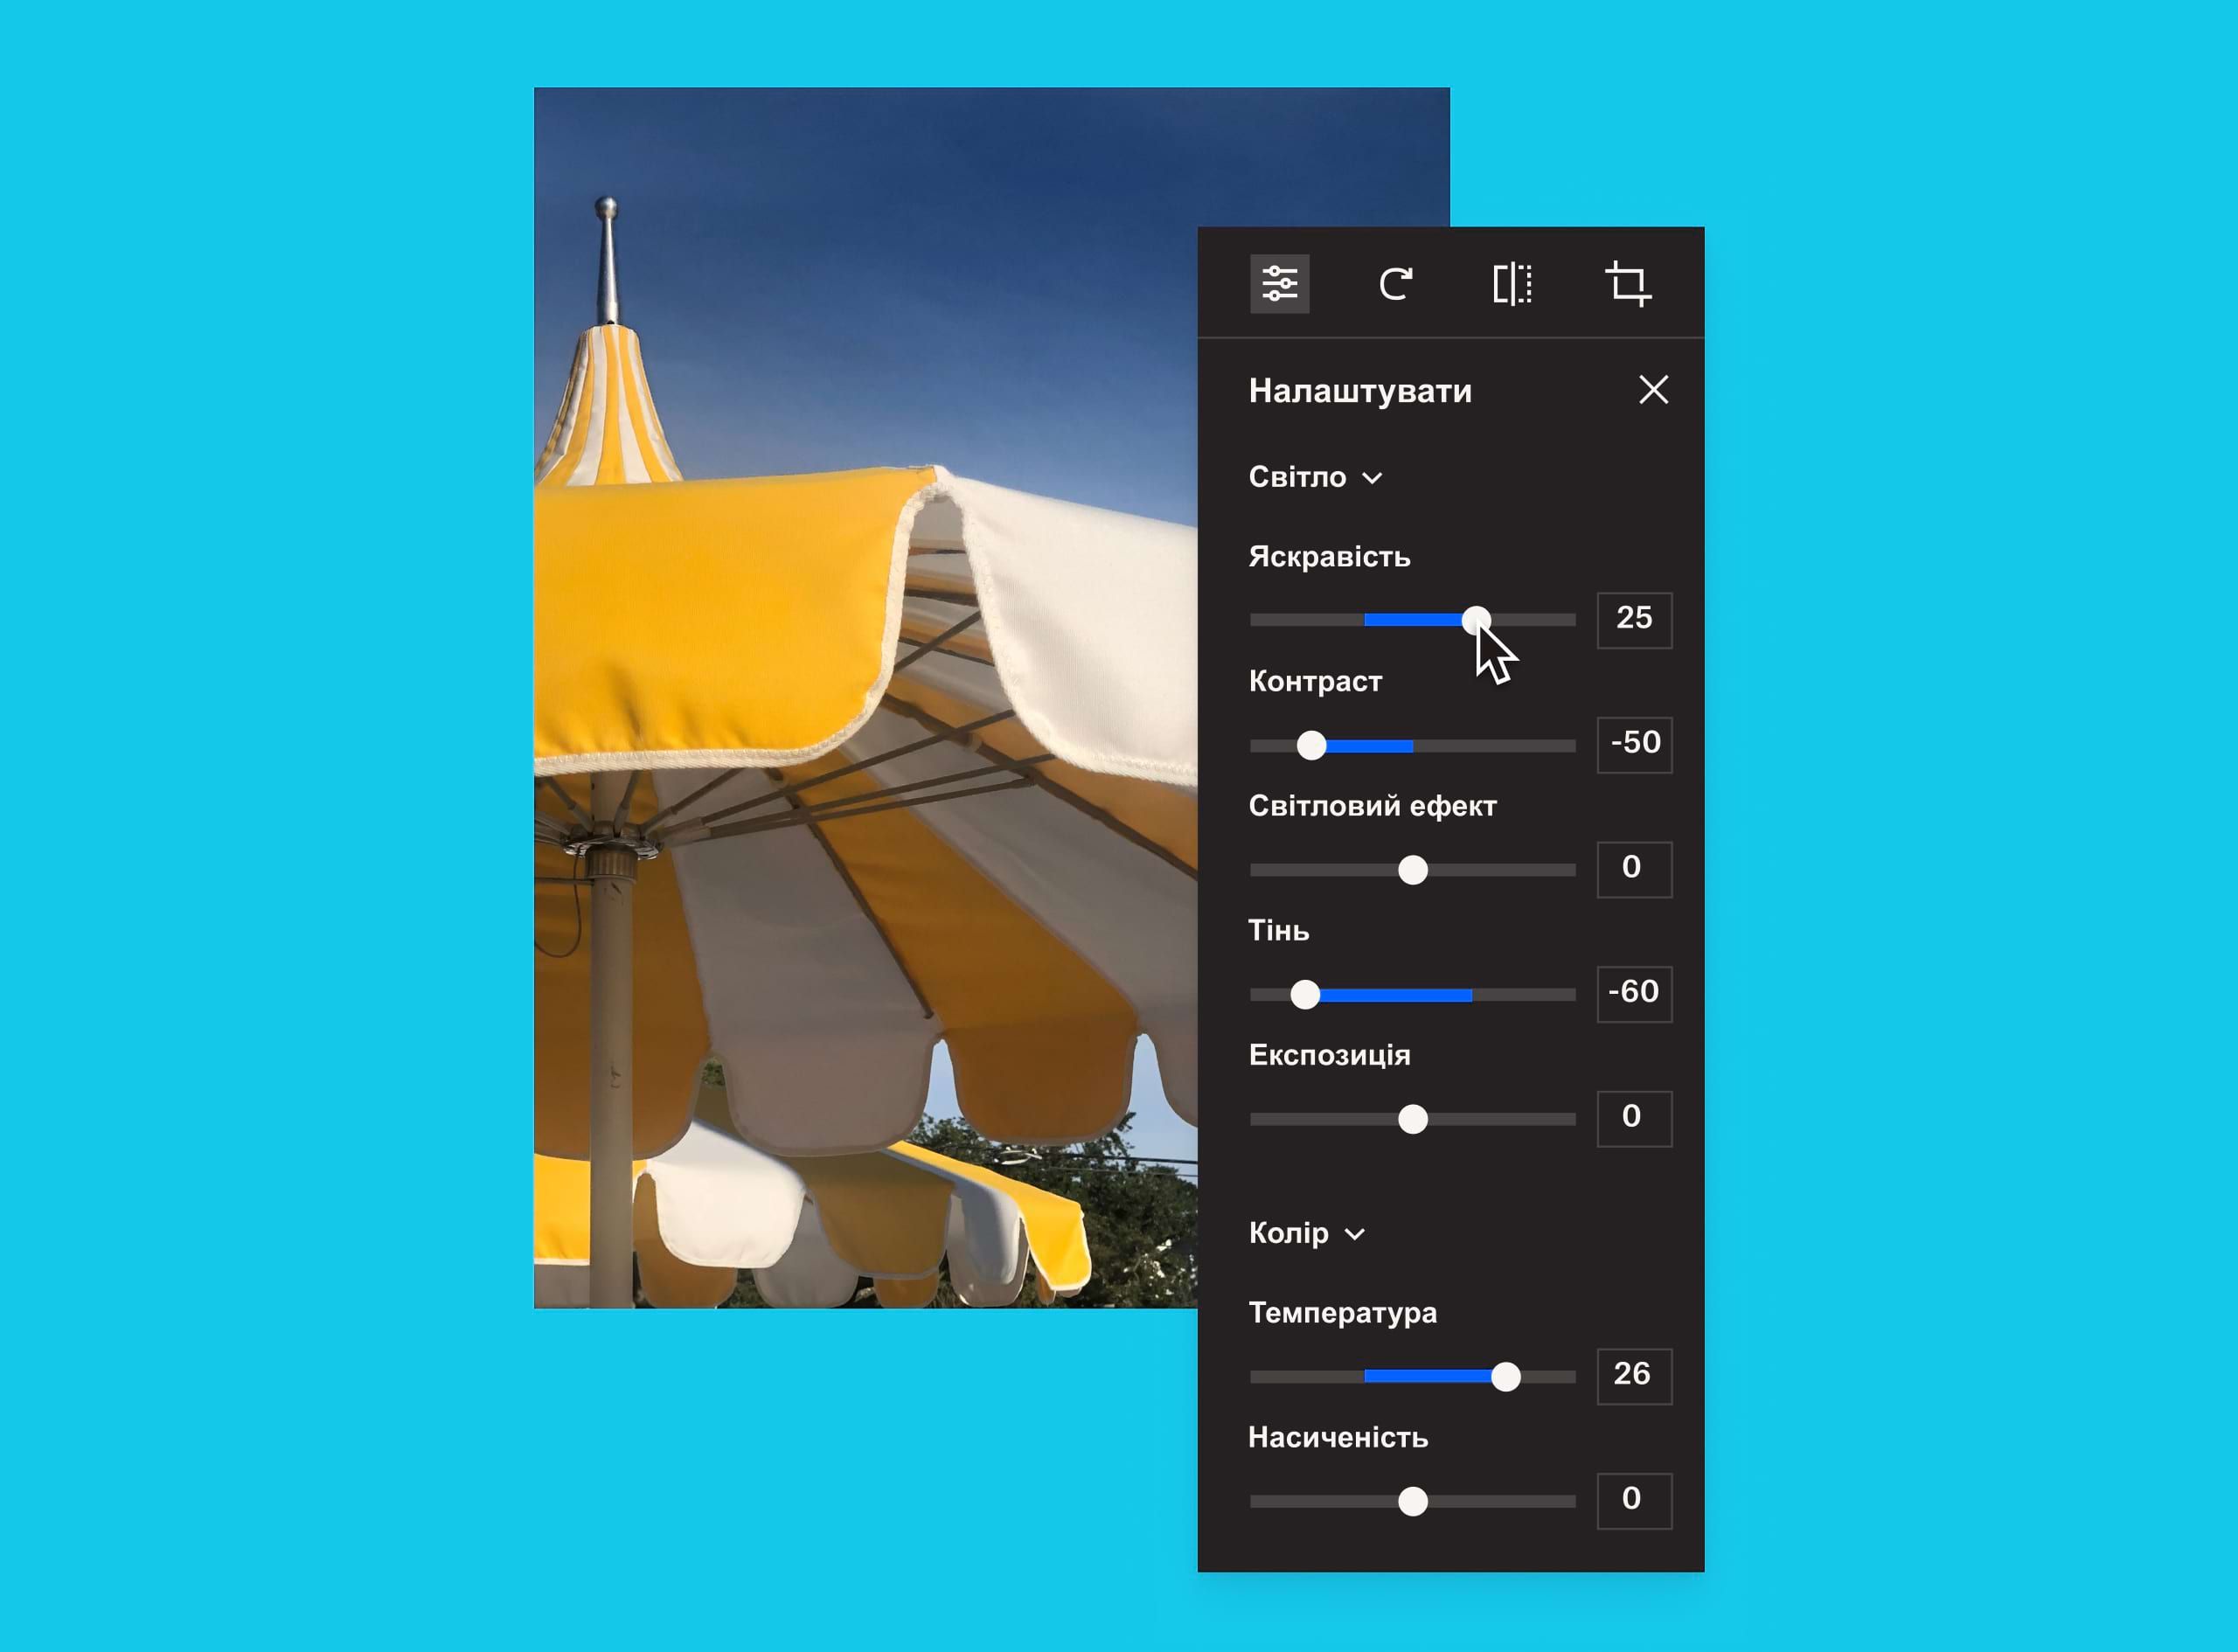 Зображення жовто-білої парасольки з накладеною панеллю налаштування зображень, де користувач змінює яскравість зображення